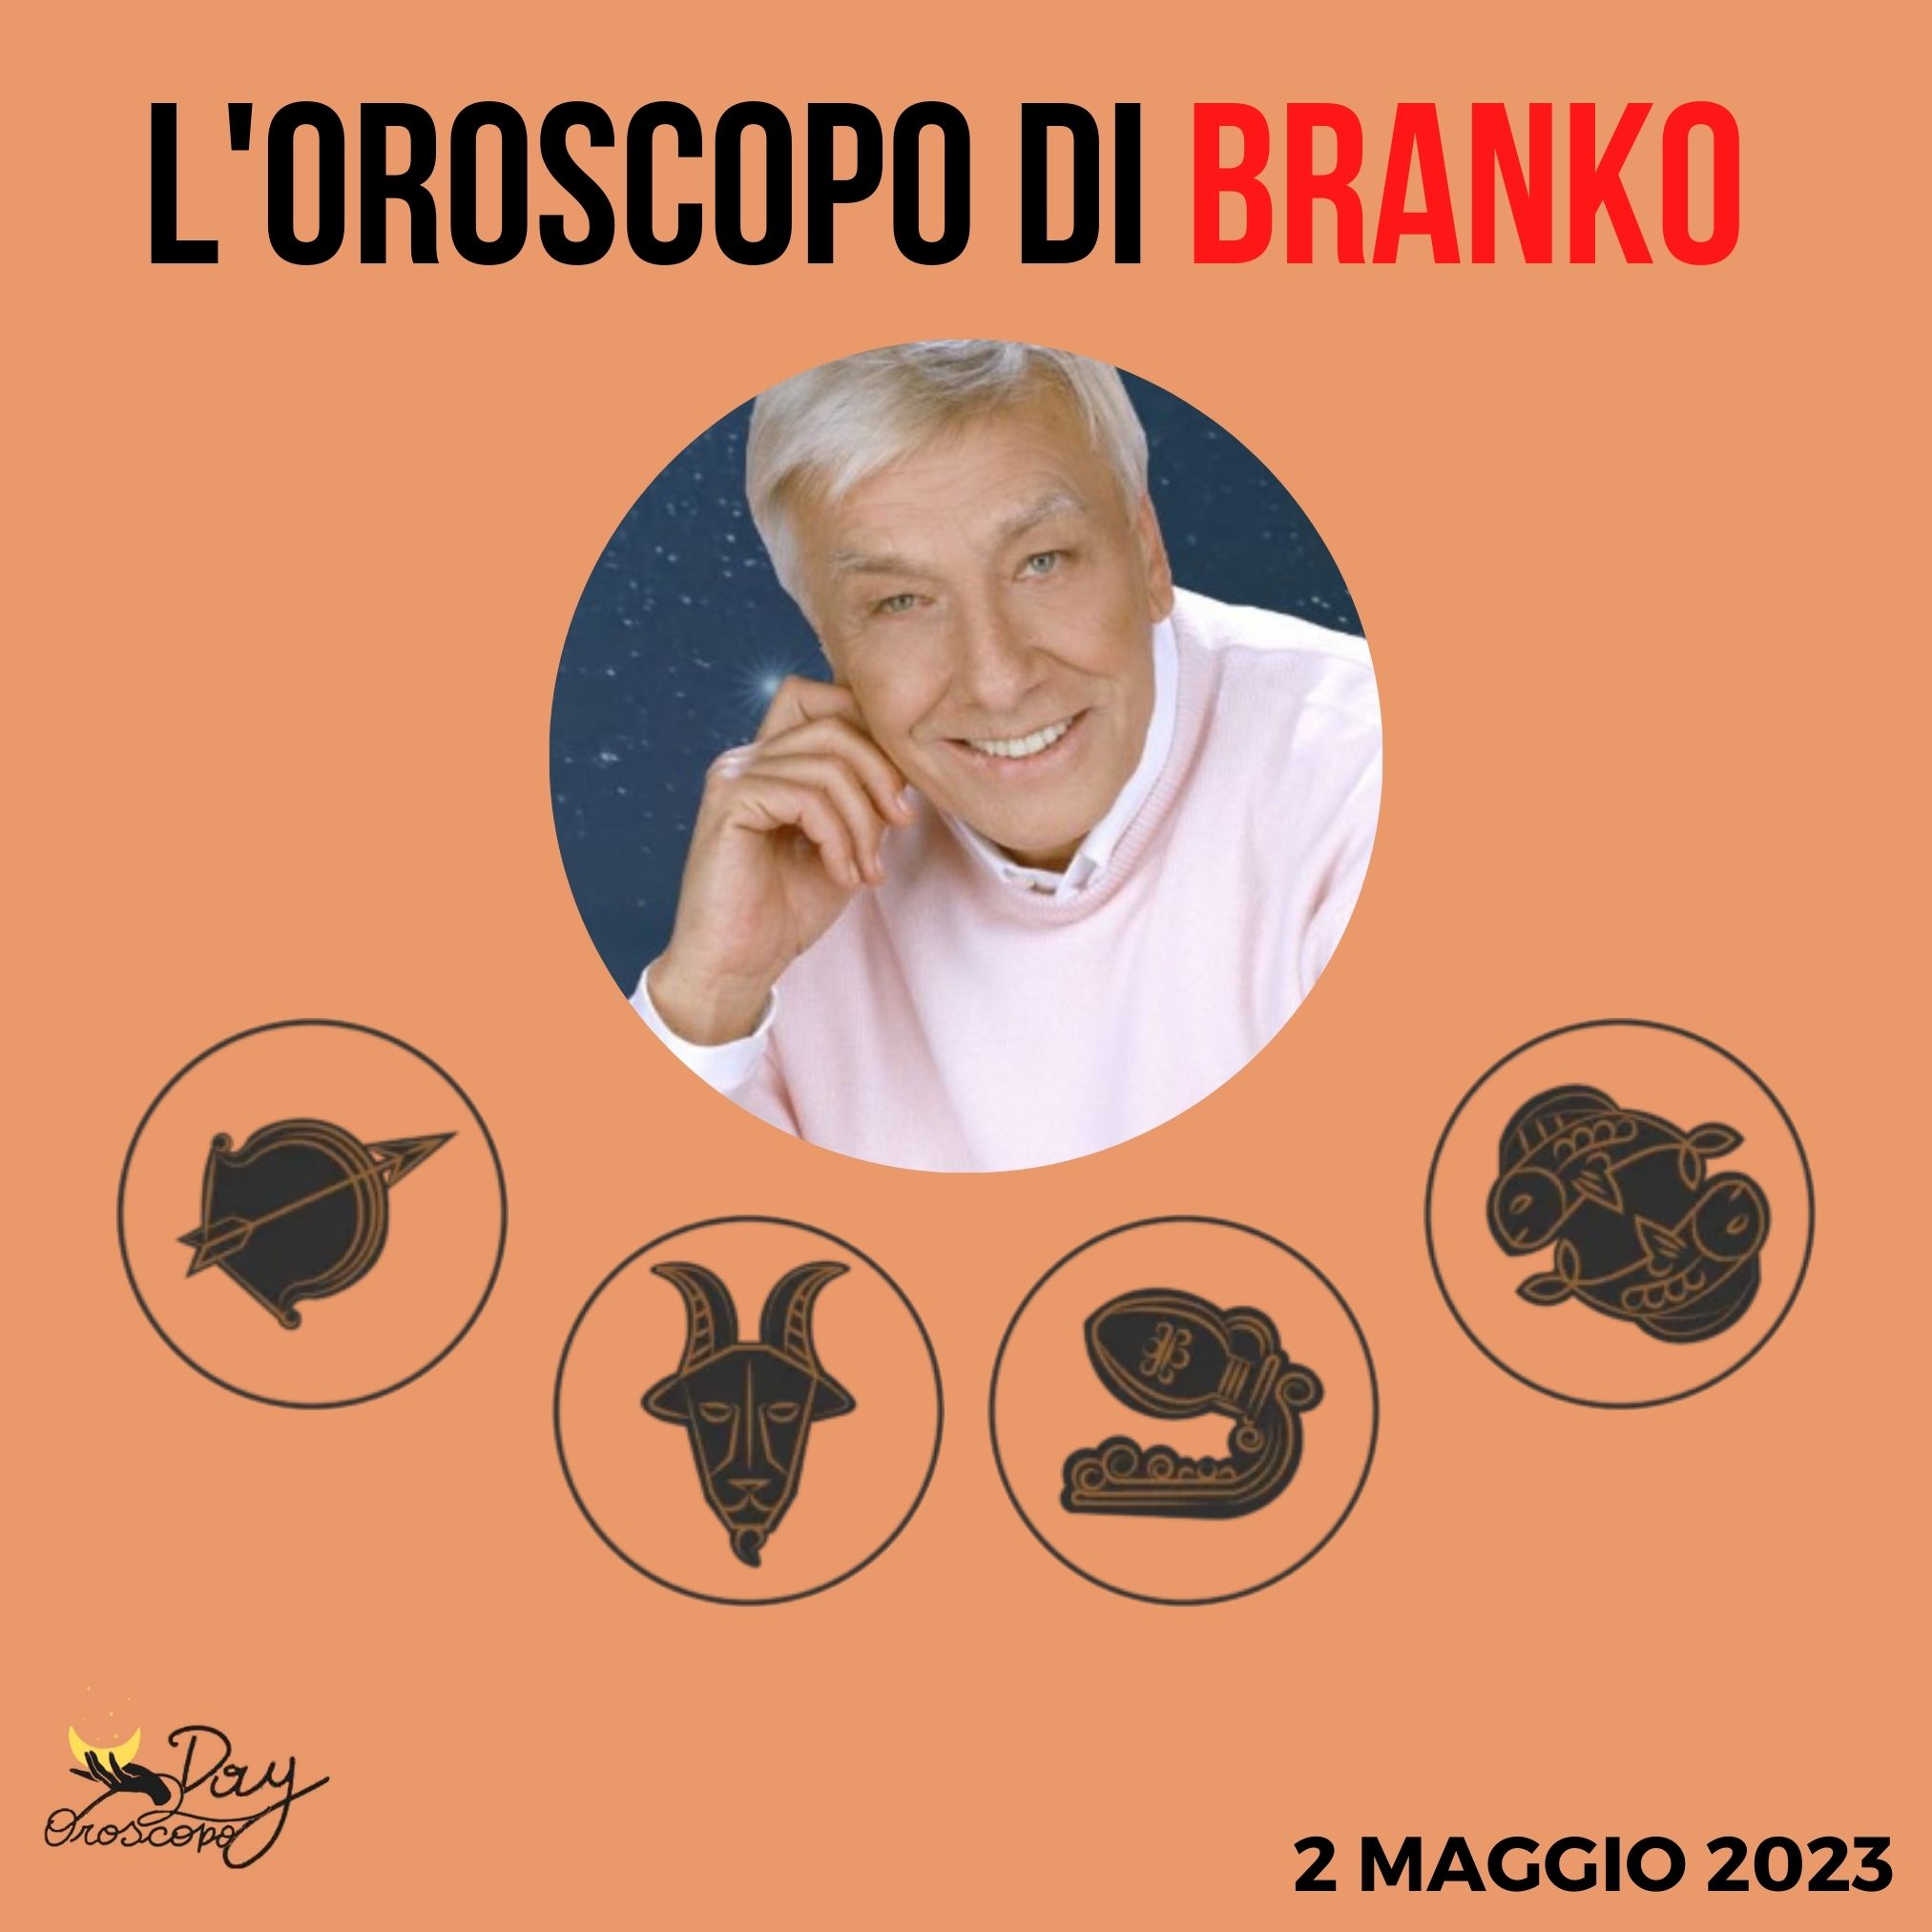 Oroscopo oggi domani Branko 2 maggio Sagittario Capricorno Acquario Pesci